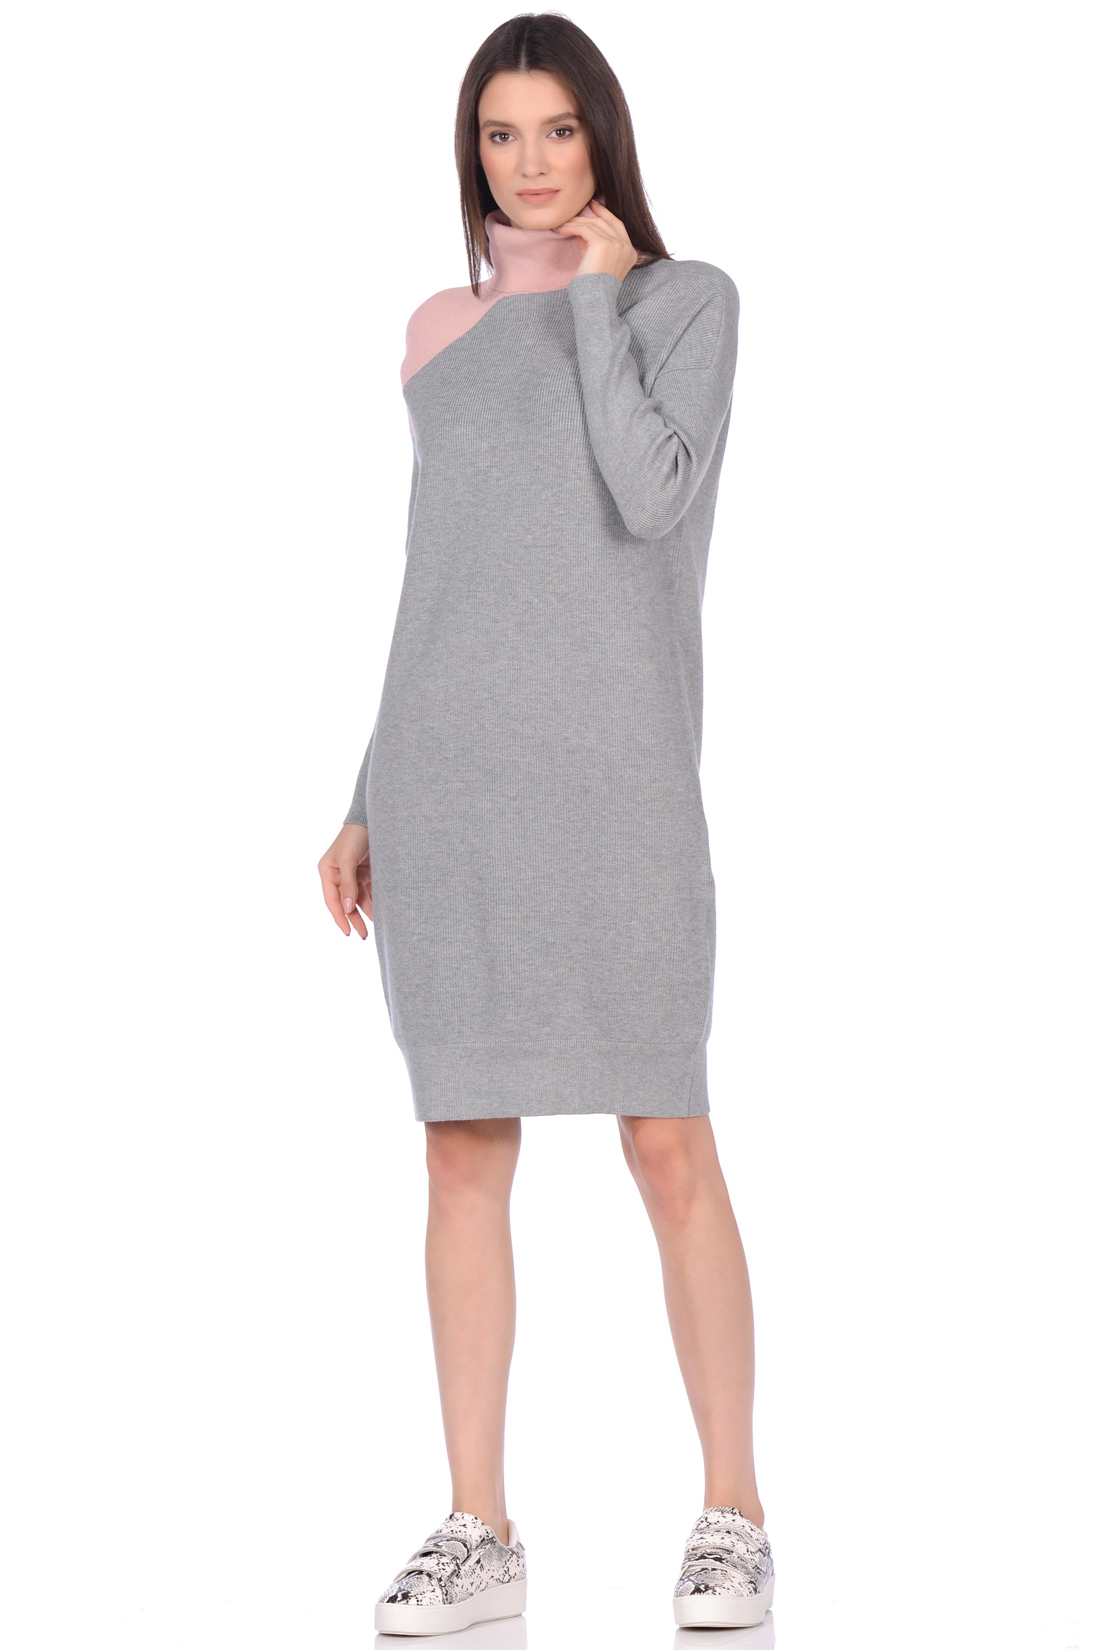 Платье-свитер в стиле color block (арт. baon B459530), размер M, цвет белый Платье-свитер в стиле color block (арт. baon B459530) - фото 1